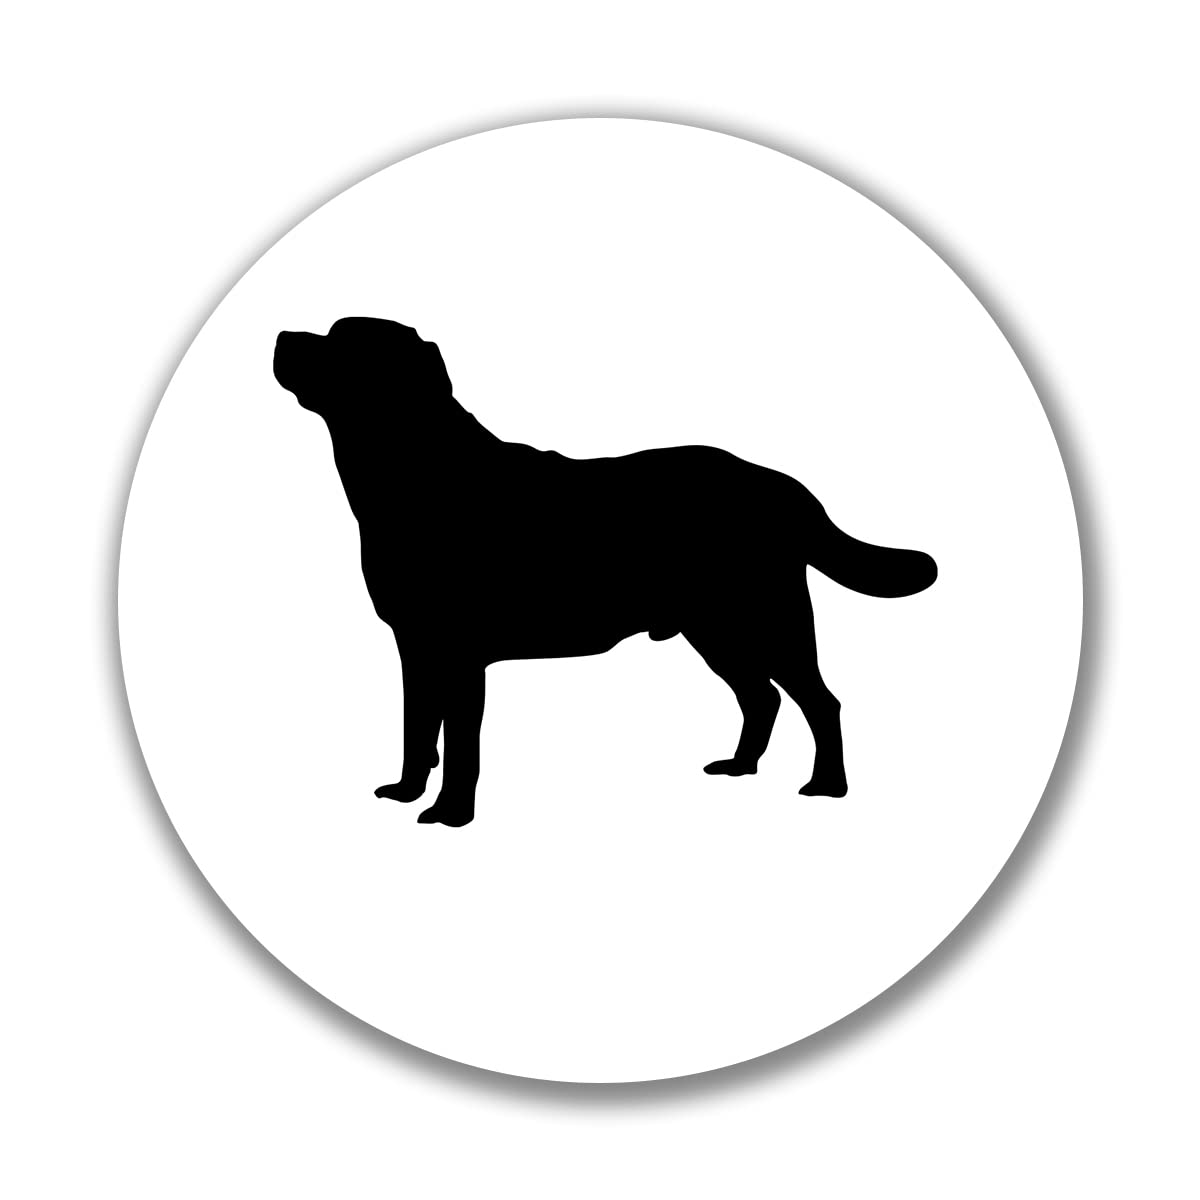 huuraa Aufkleber Labrador Retriever Silhouette Sticker Größe 10cm mit Motiv für Hundefreunde Geschenk Idee für Freunde und Familie von huuraa